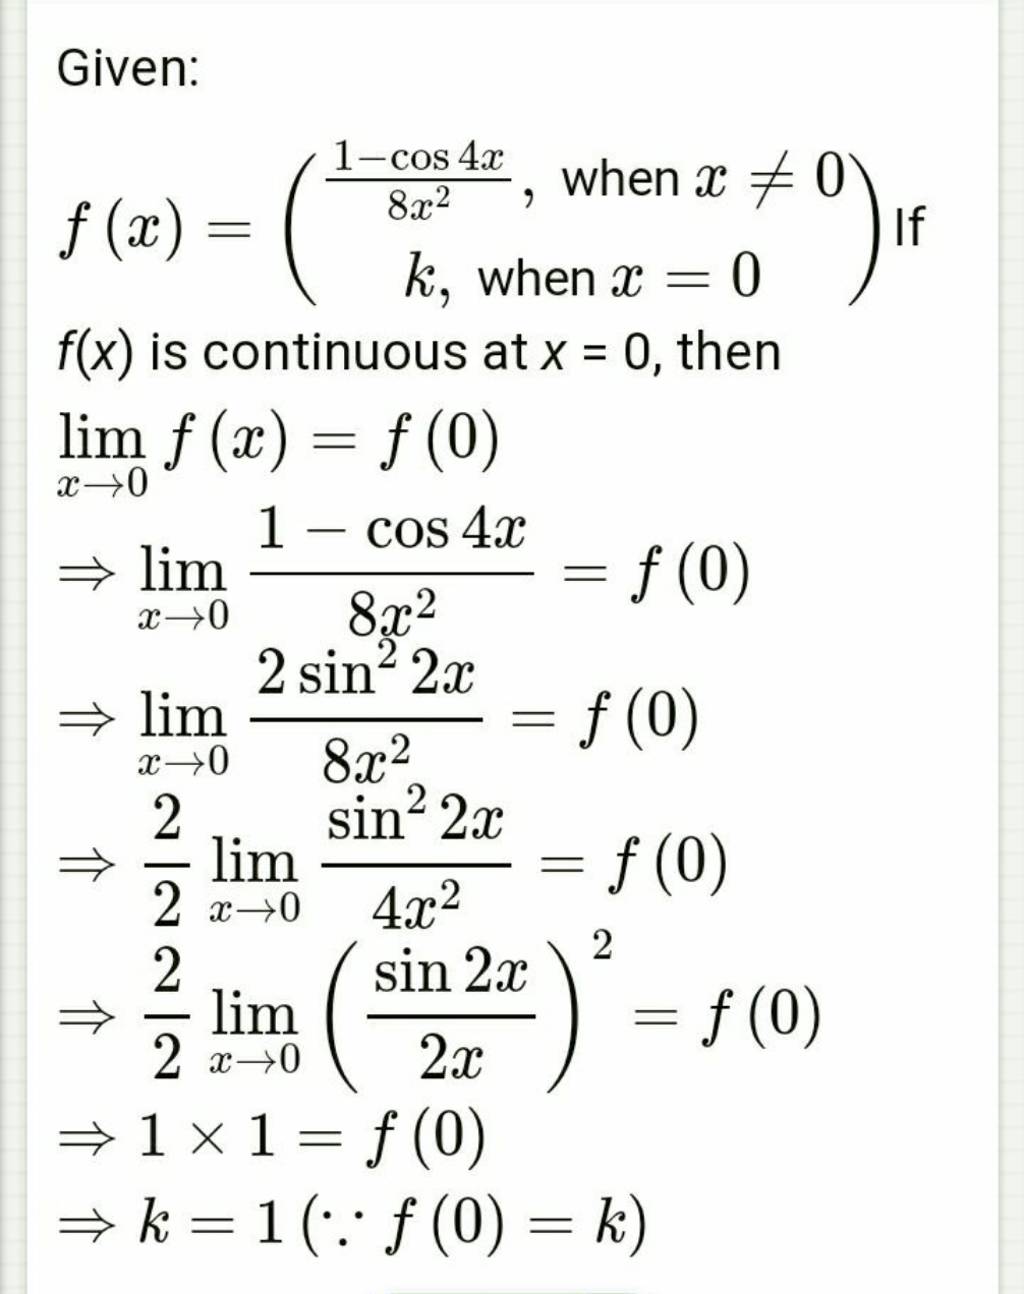 Given:
f(x)=(8x21−cos4x​, when x=0k, when x=0​) If 
f(x) is continuou